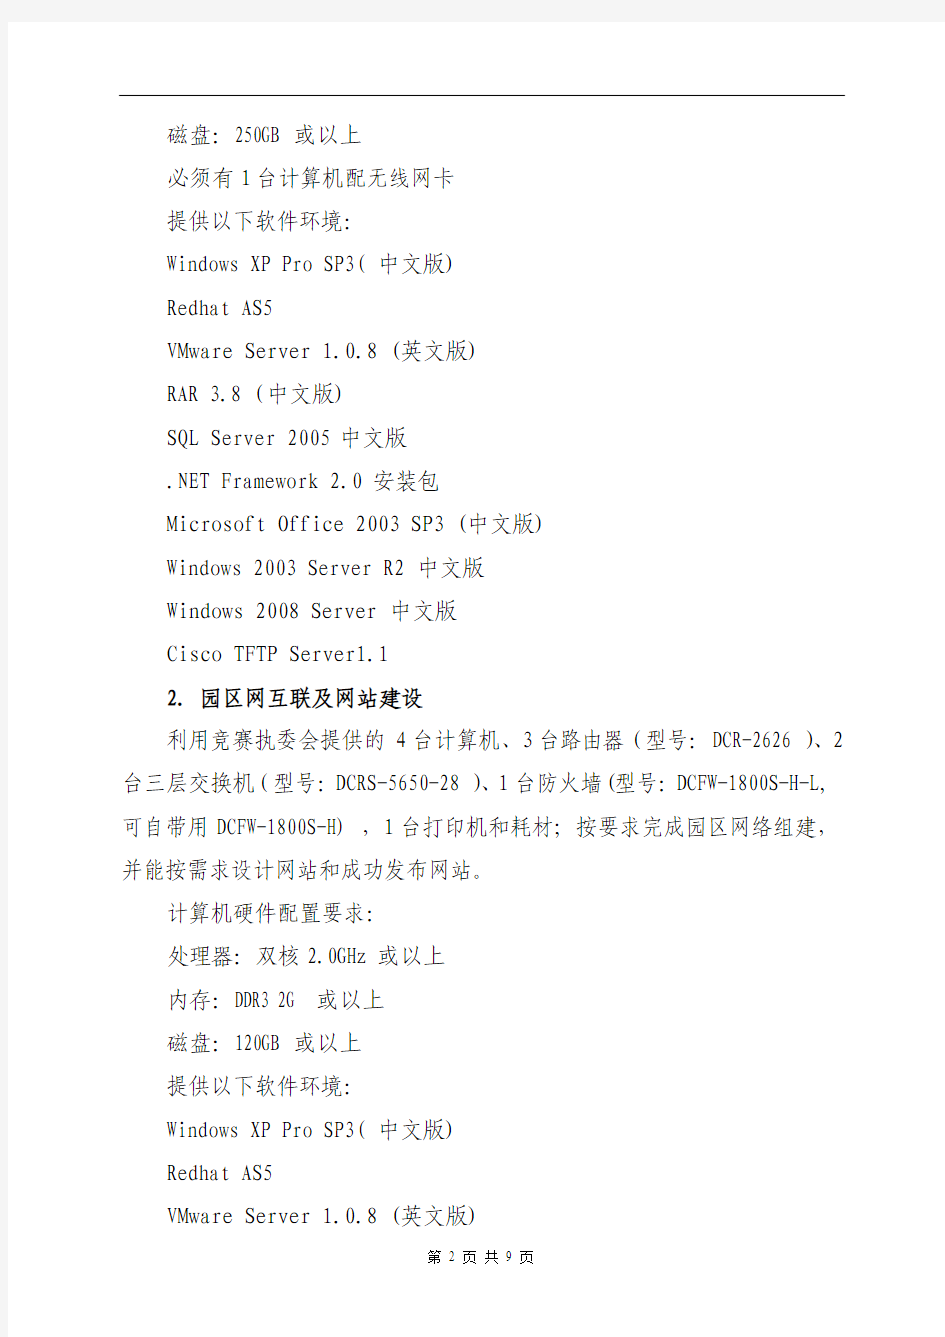 5--2011年广东省“计算机技术”大赛规程(6个项目)